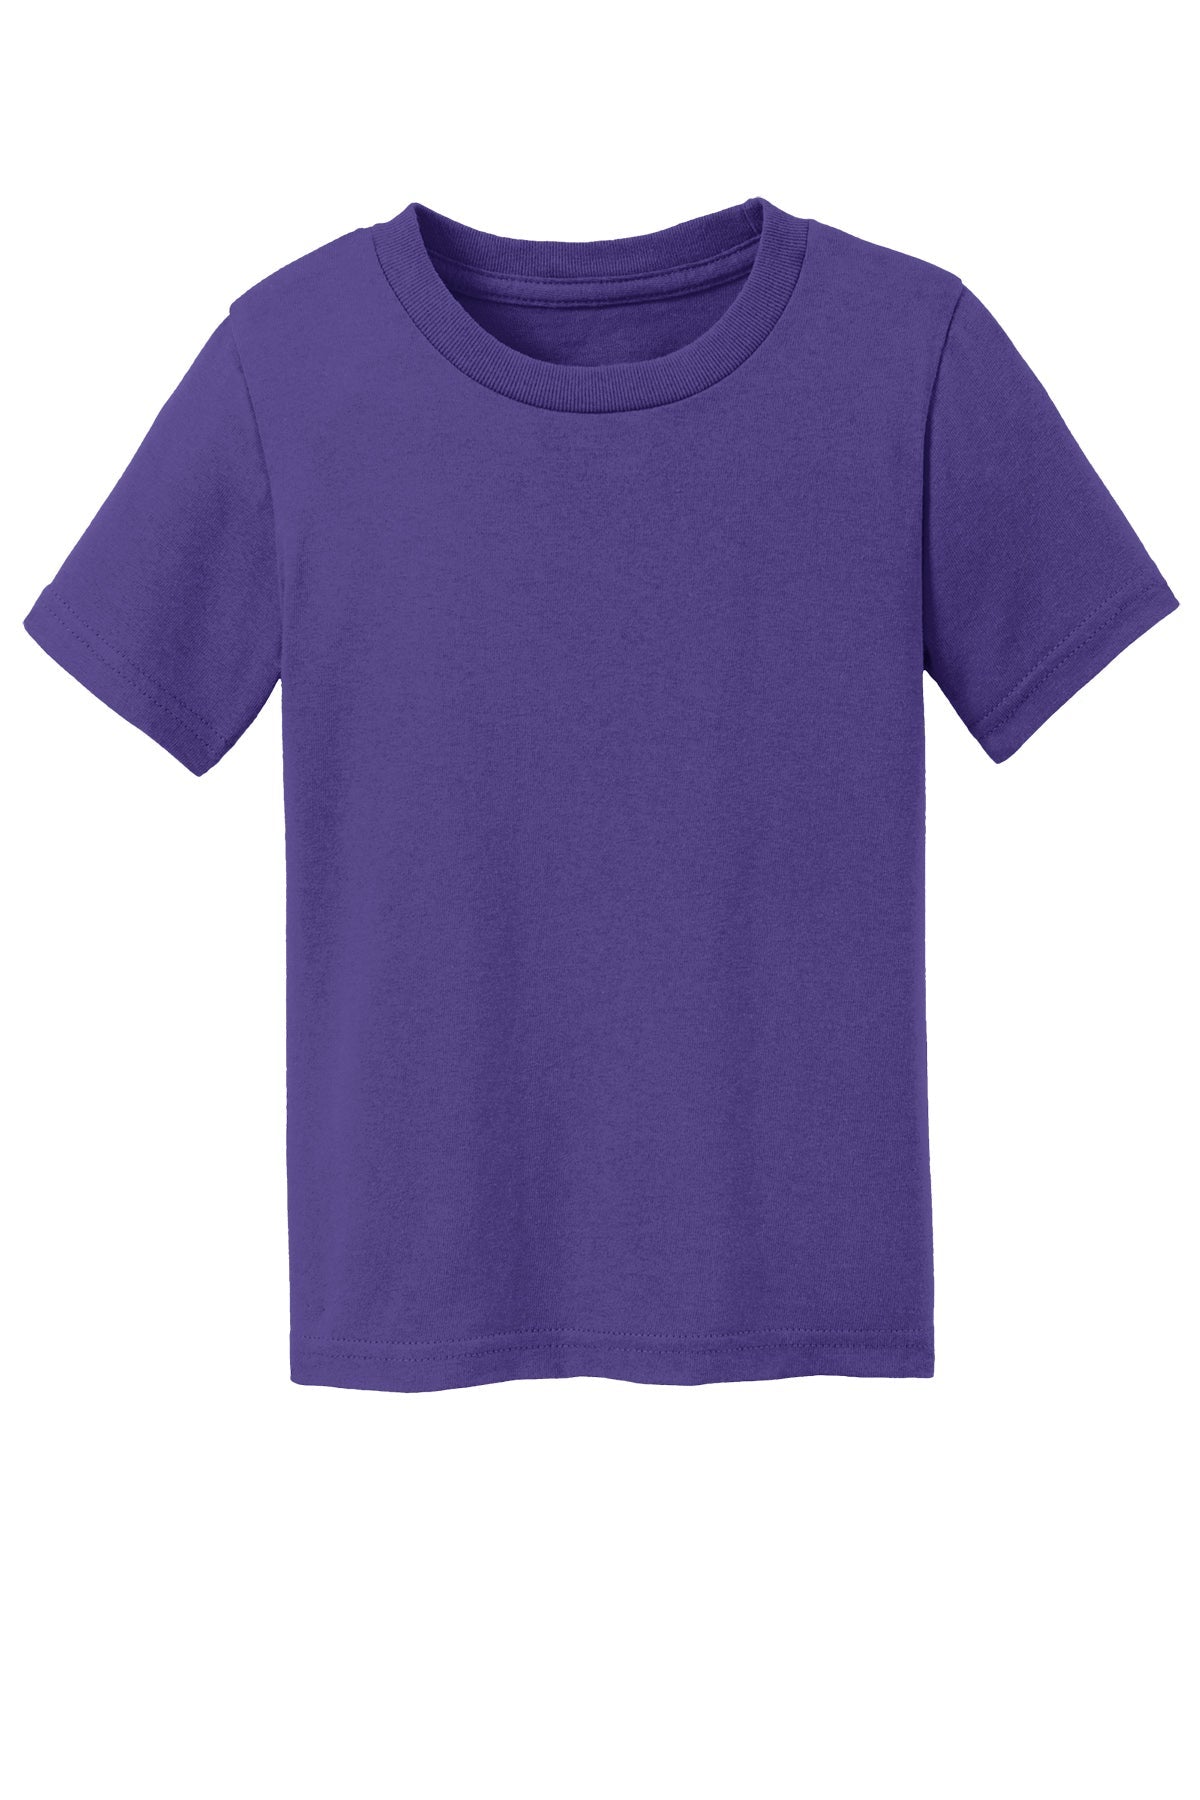 Port & Co Car54T Toddler T-Shirt 2T / Purple